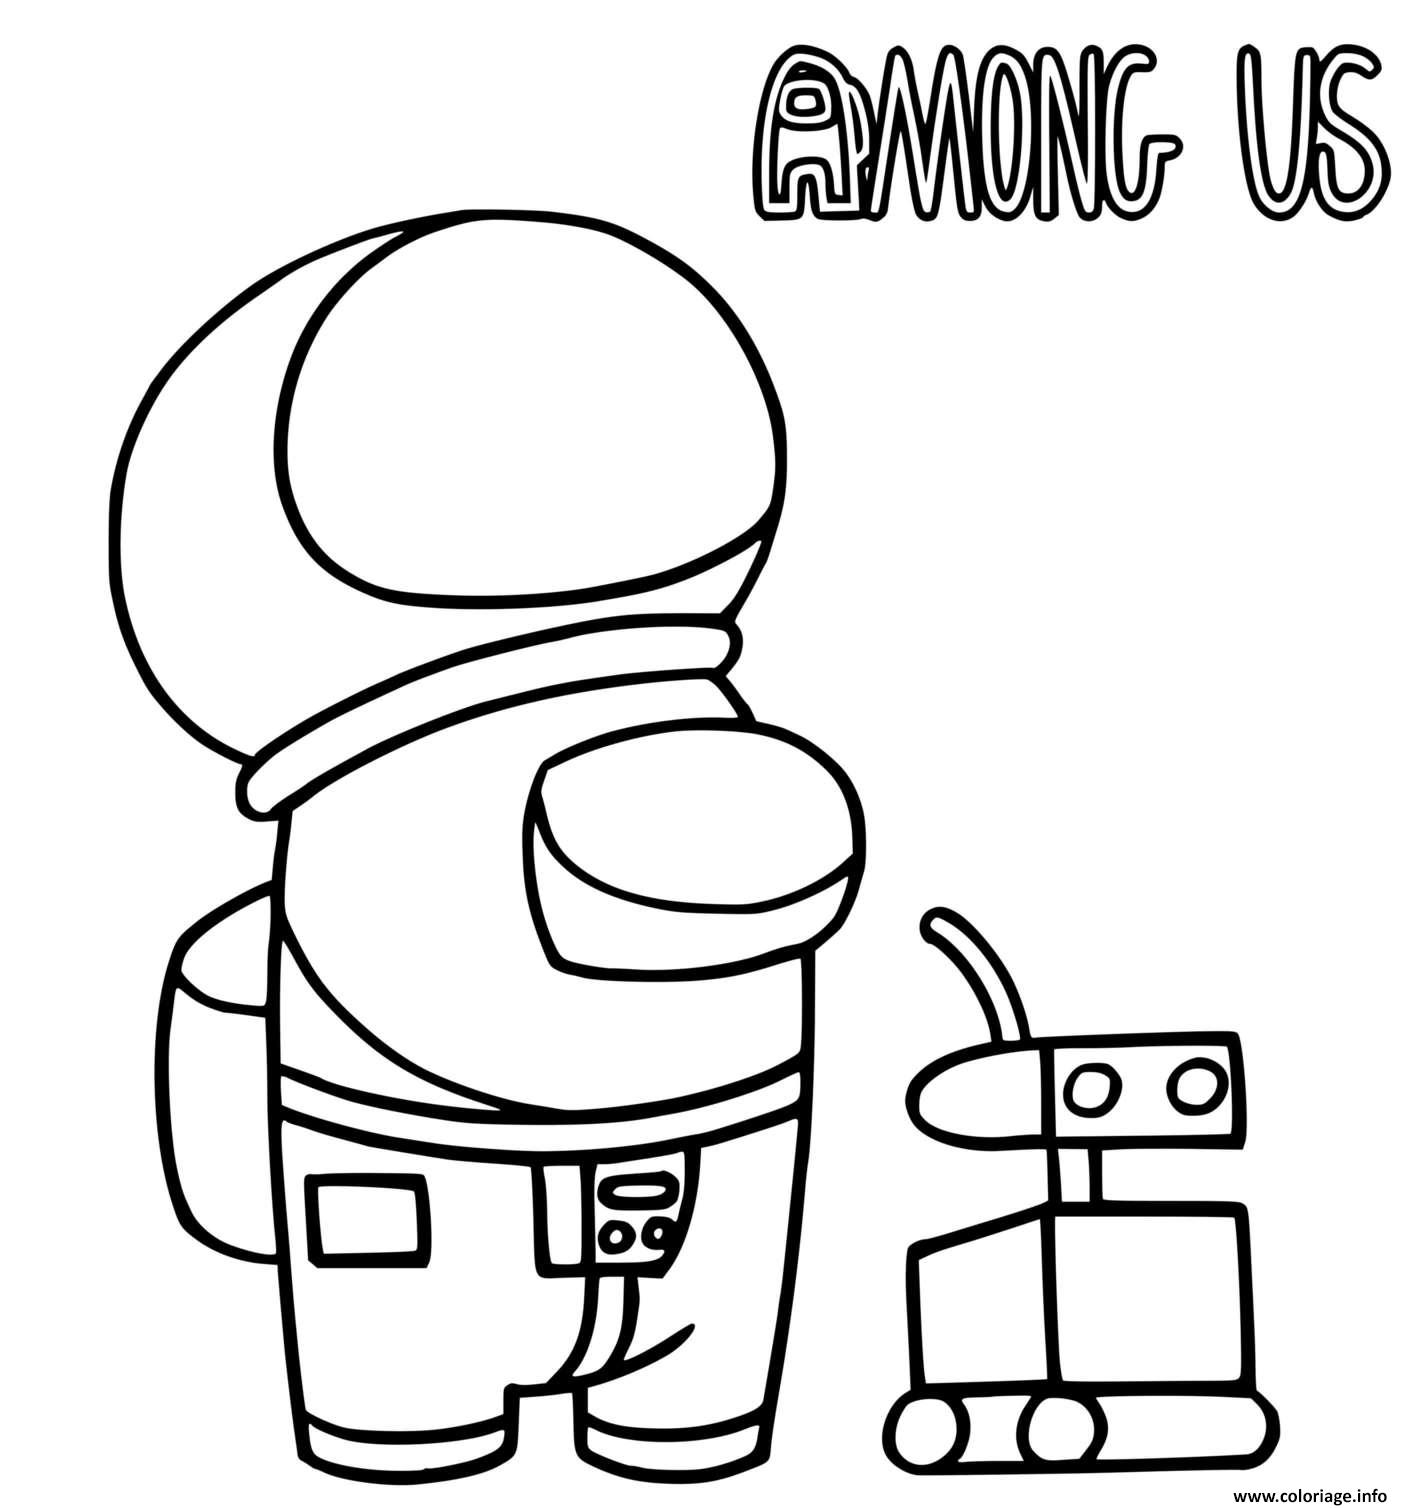 Dessin un astronaute among us et un robot Coloriage Gratuit à Imprimer